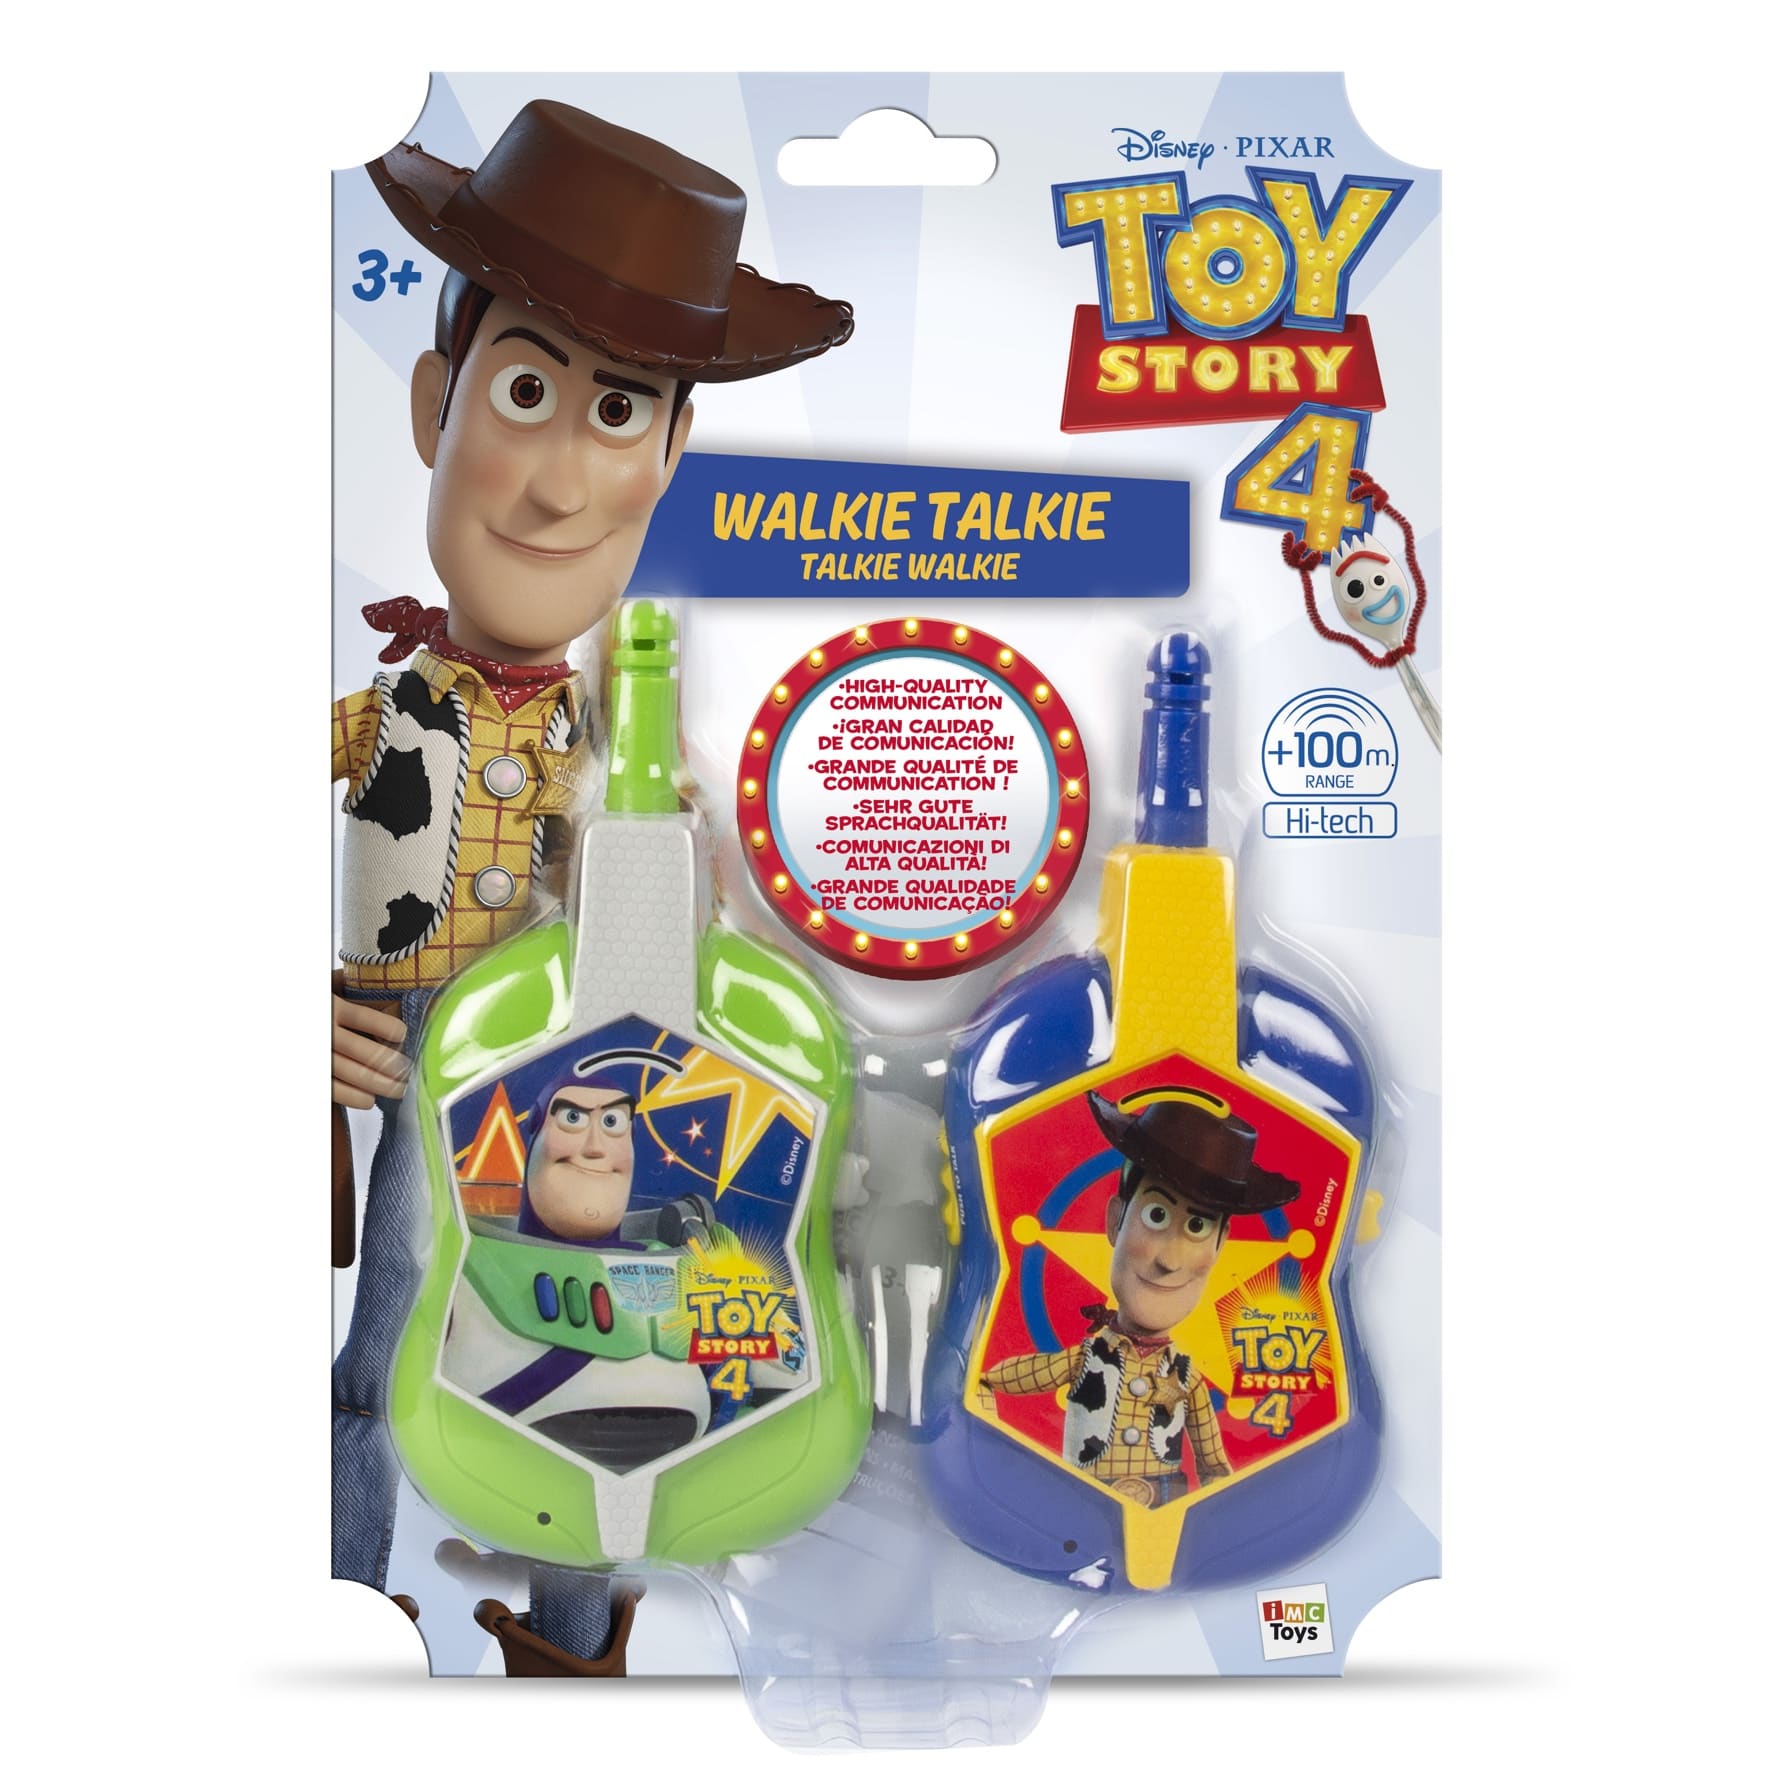 Walkie Talkie Toy Story 4 Buzz Lightyear and Woody Roleplay Disney 